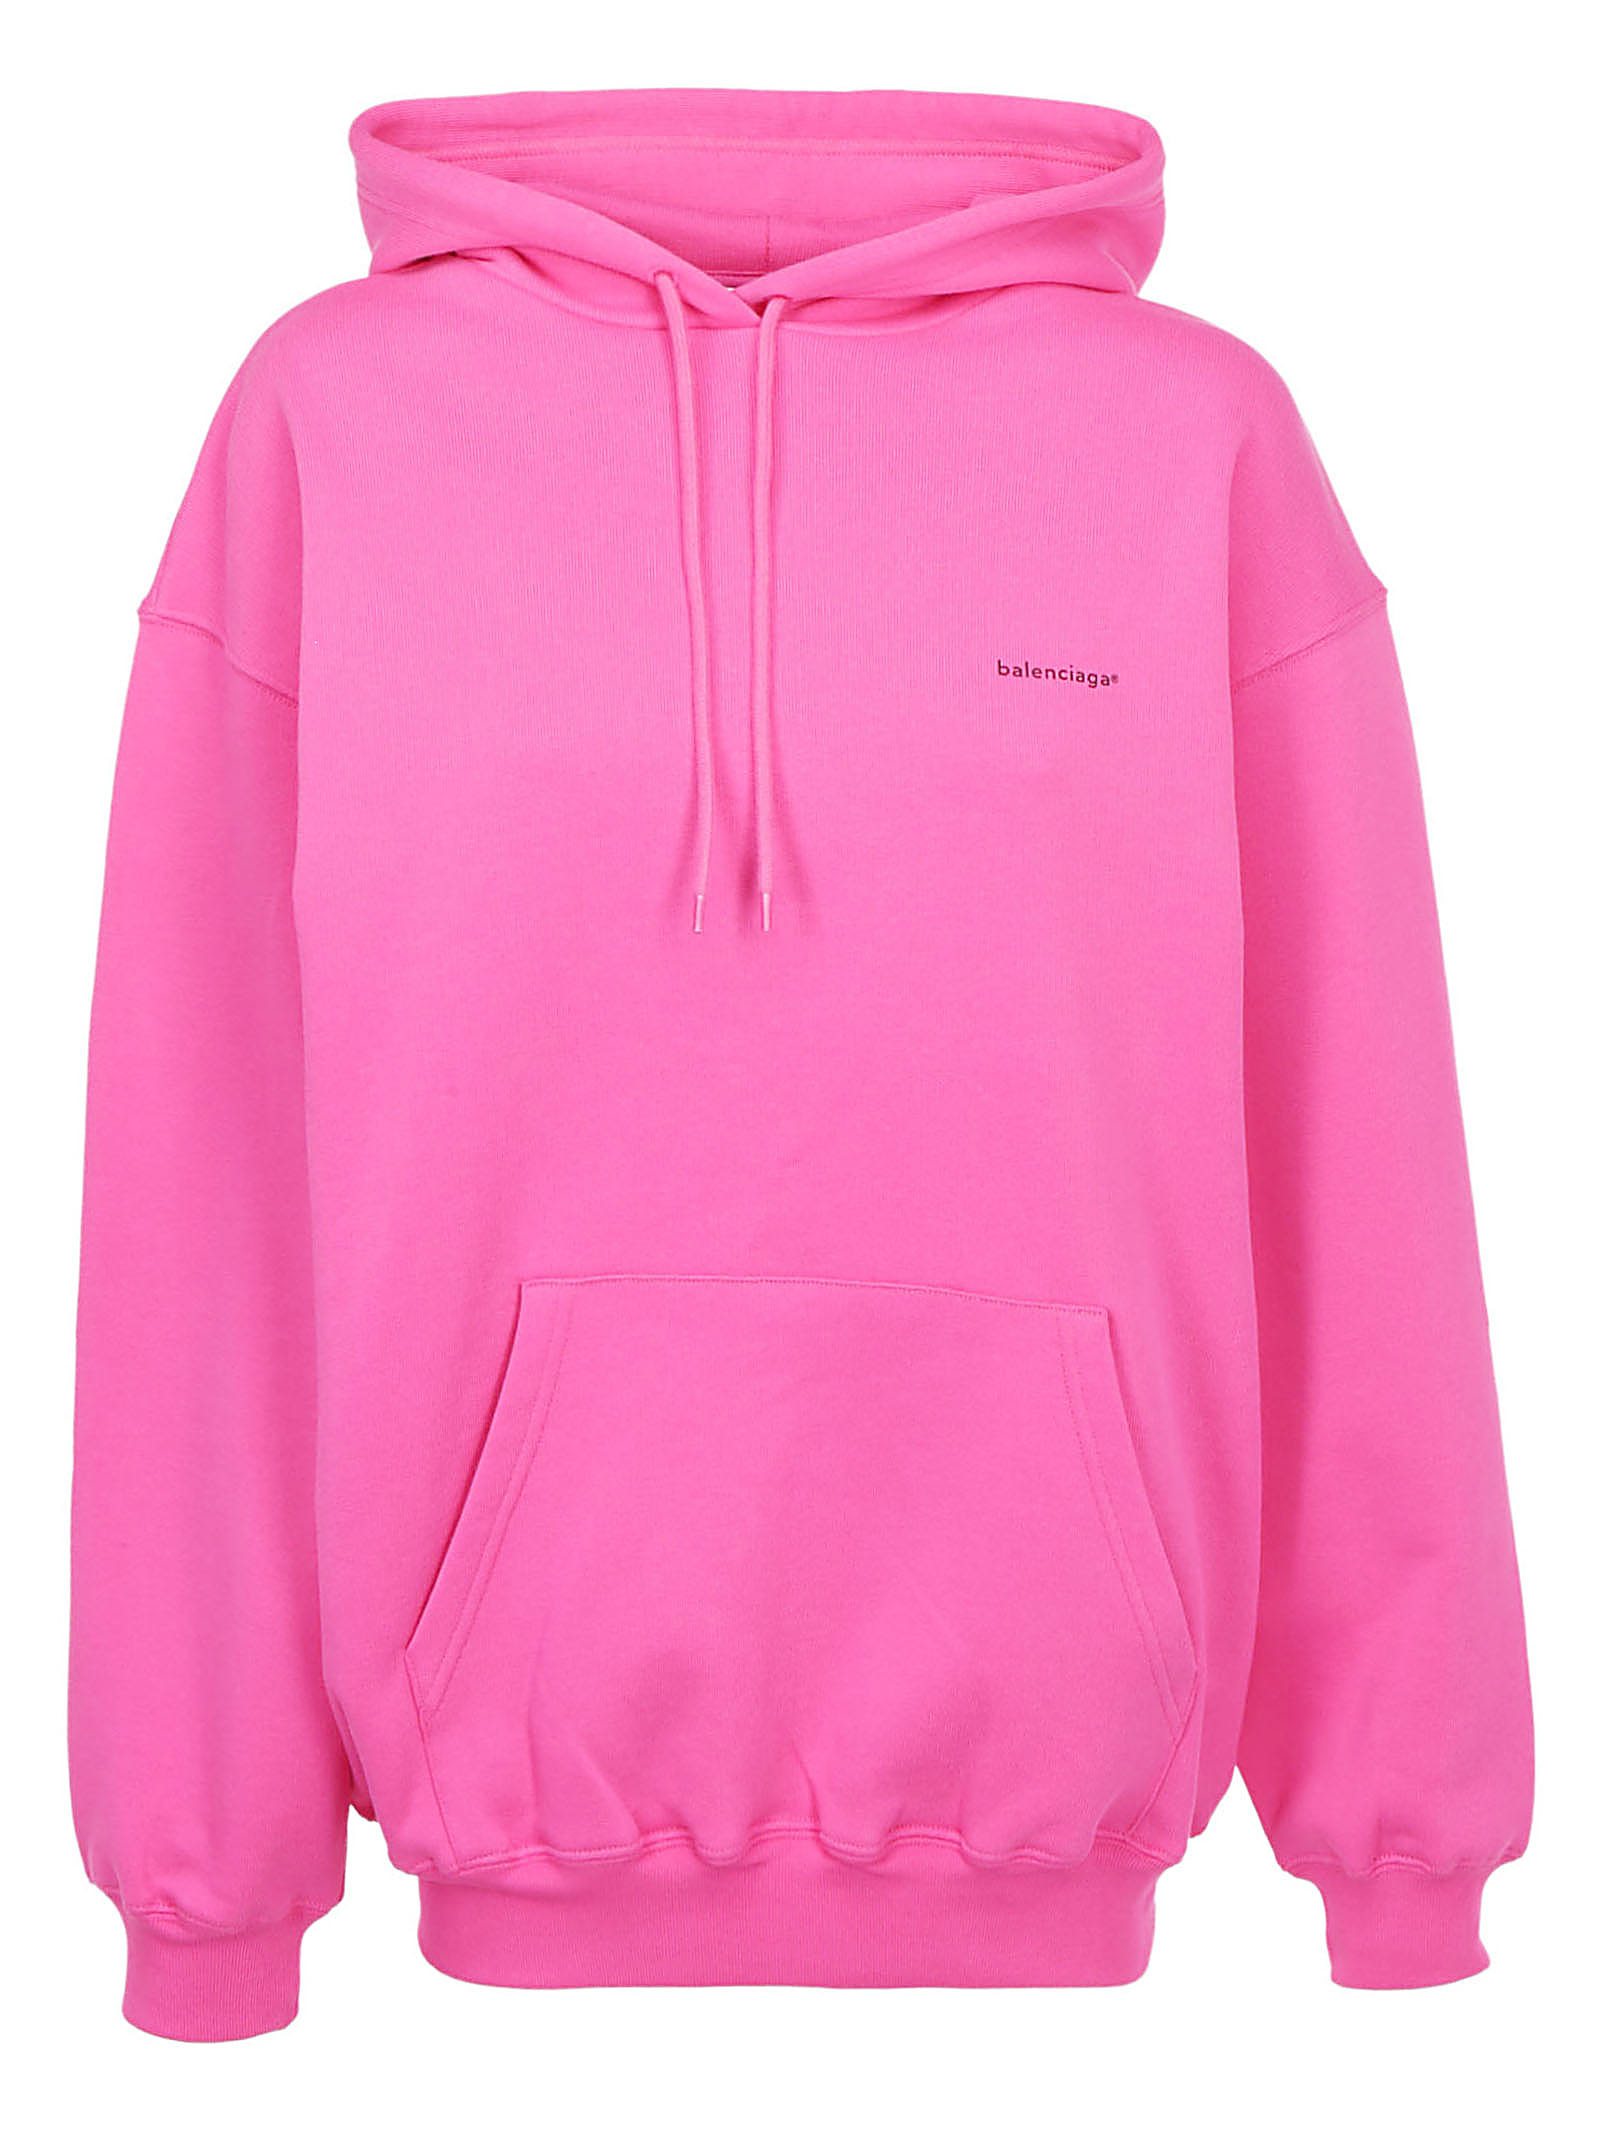 balenciaga sweatshirt pink